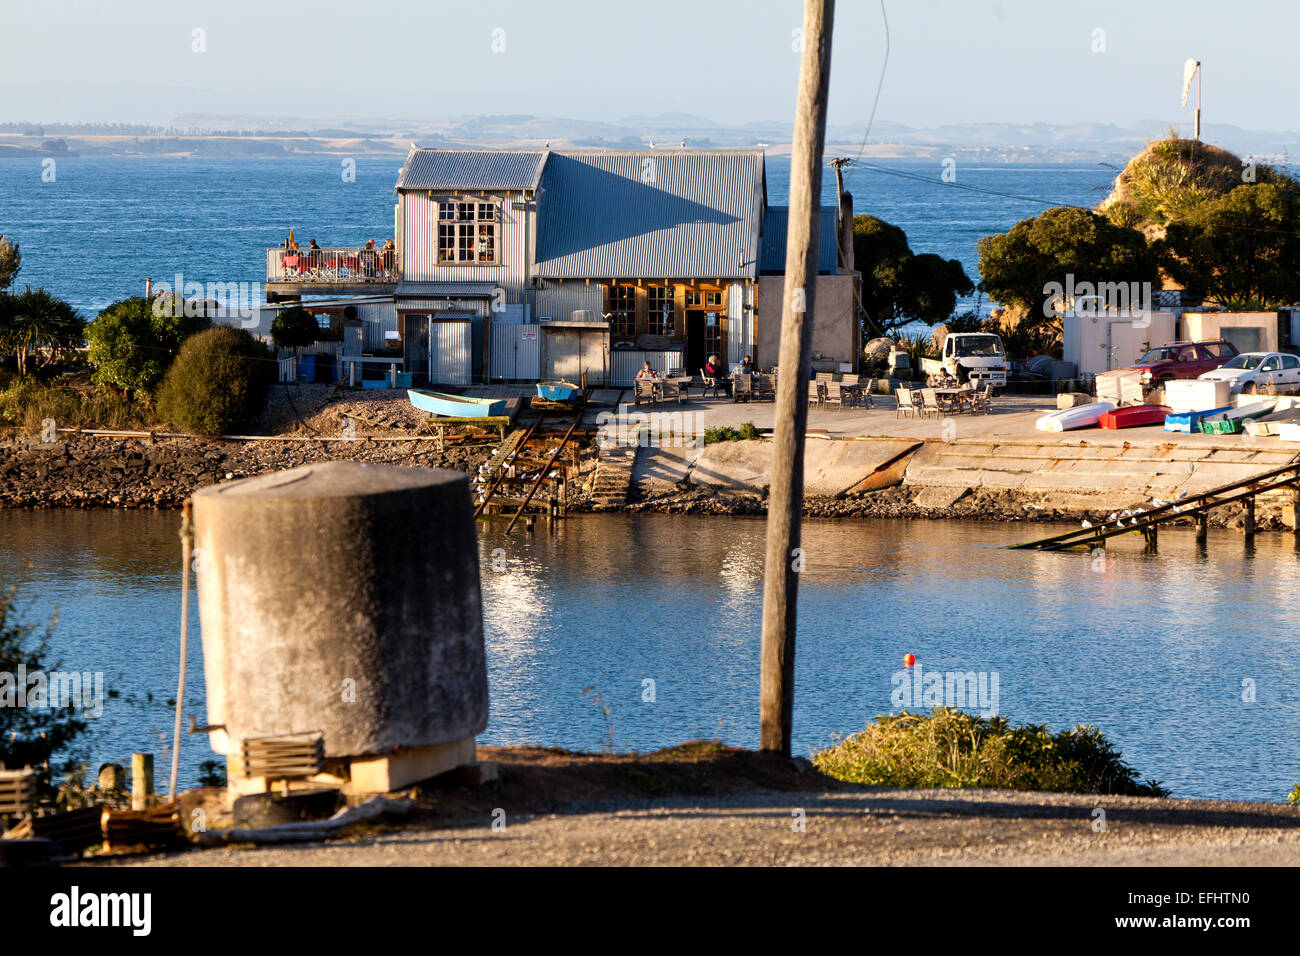 Fleurs Place, bekannte Fischrestaurant mit Wellblech Architektur, Moeraki, Otago, Südinsel, Neuseeland Stockfoto